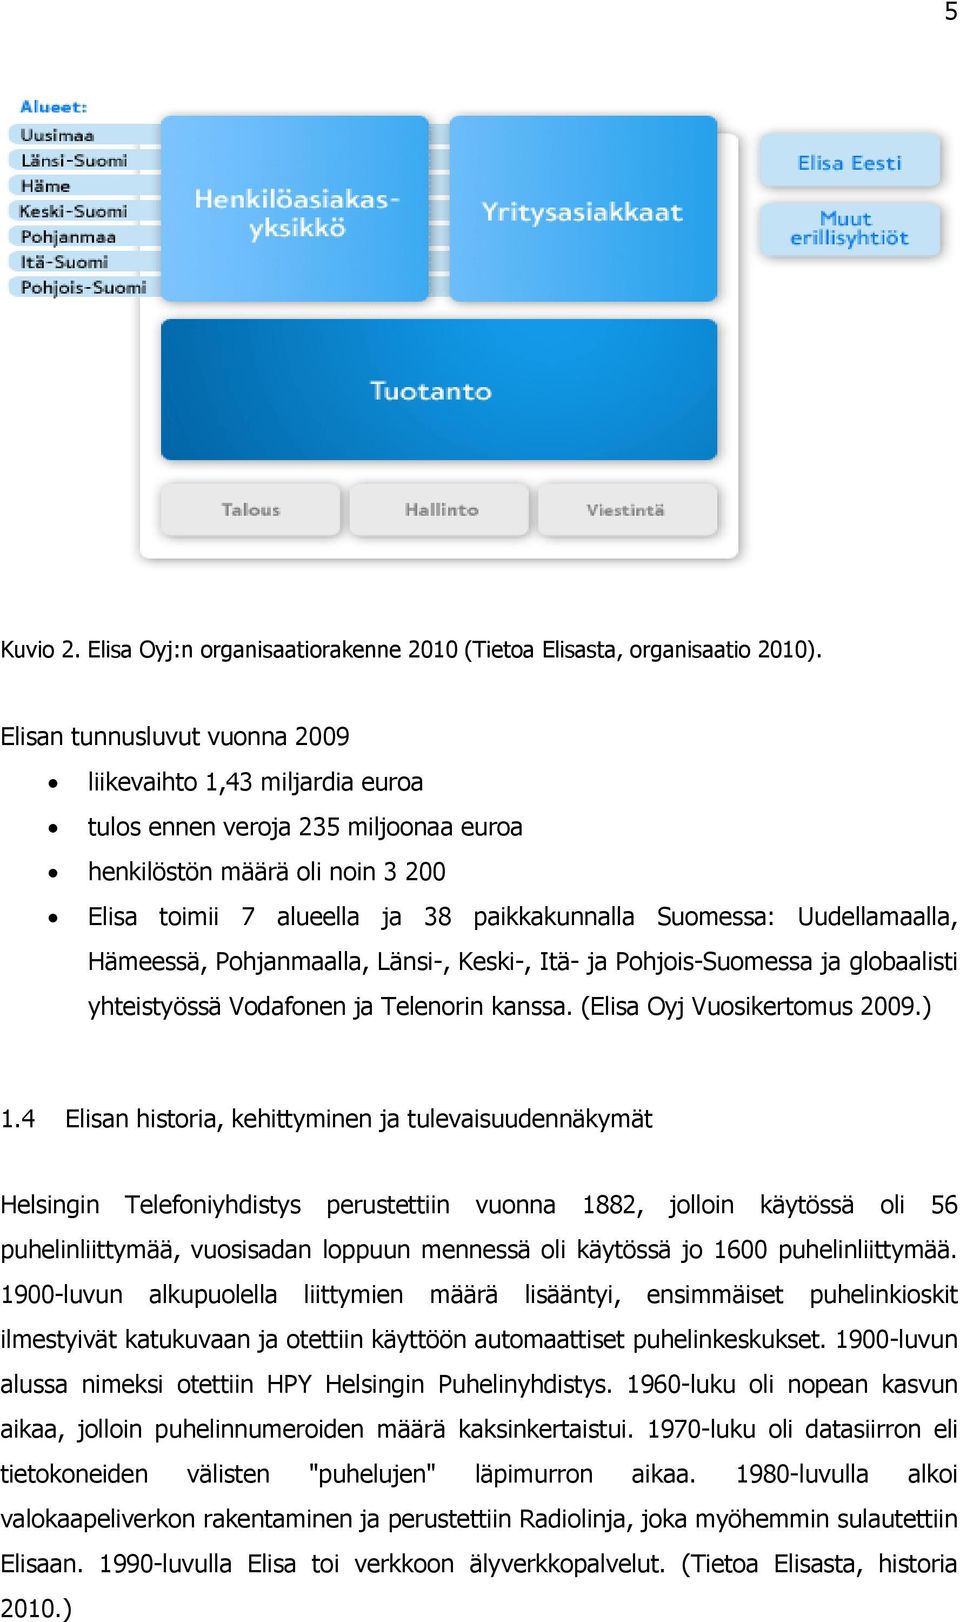 Uudellamaalla, Hämeessä, Pohjanmaalla, Länsi-, Keski-, Itä- ja Pohjois-Suomessa ja globaalisti yhteistyössä Vodafonen ja Telenorin kanssa. (Elisa Oyj Vuosikertomus 2009.) 1.